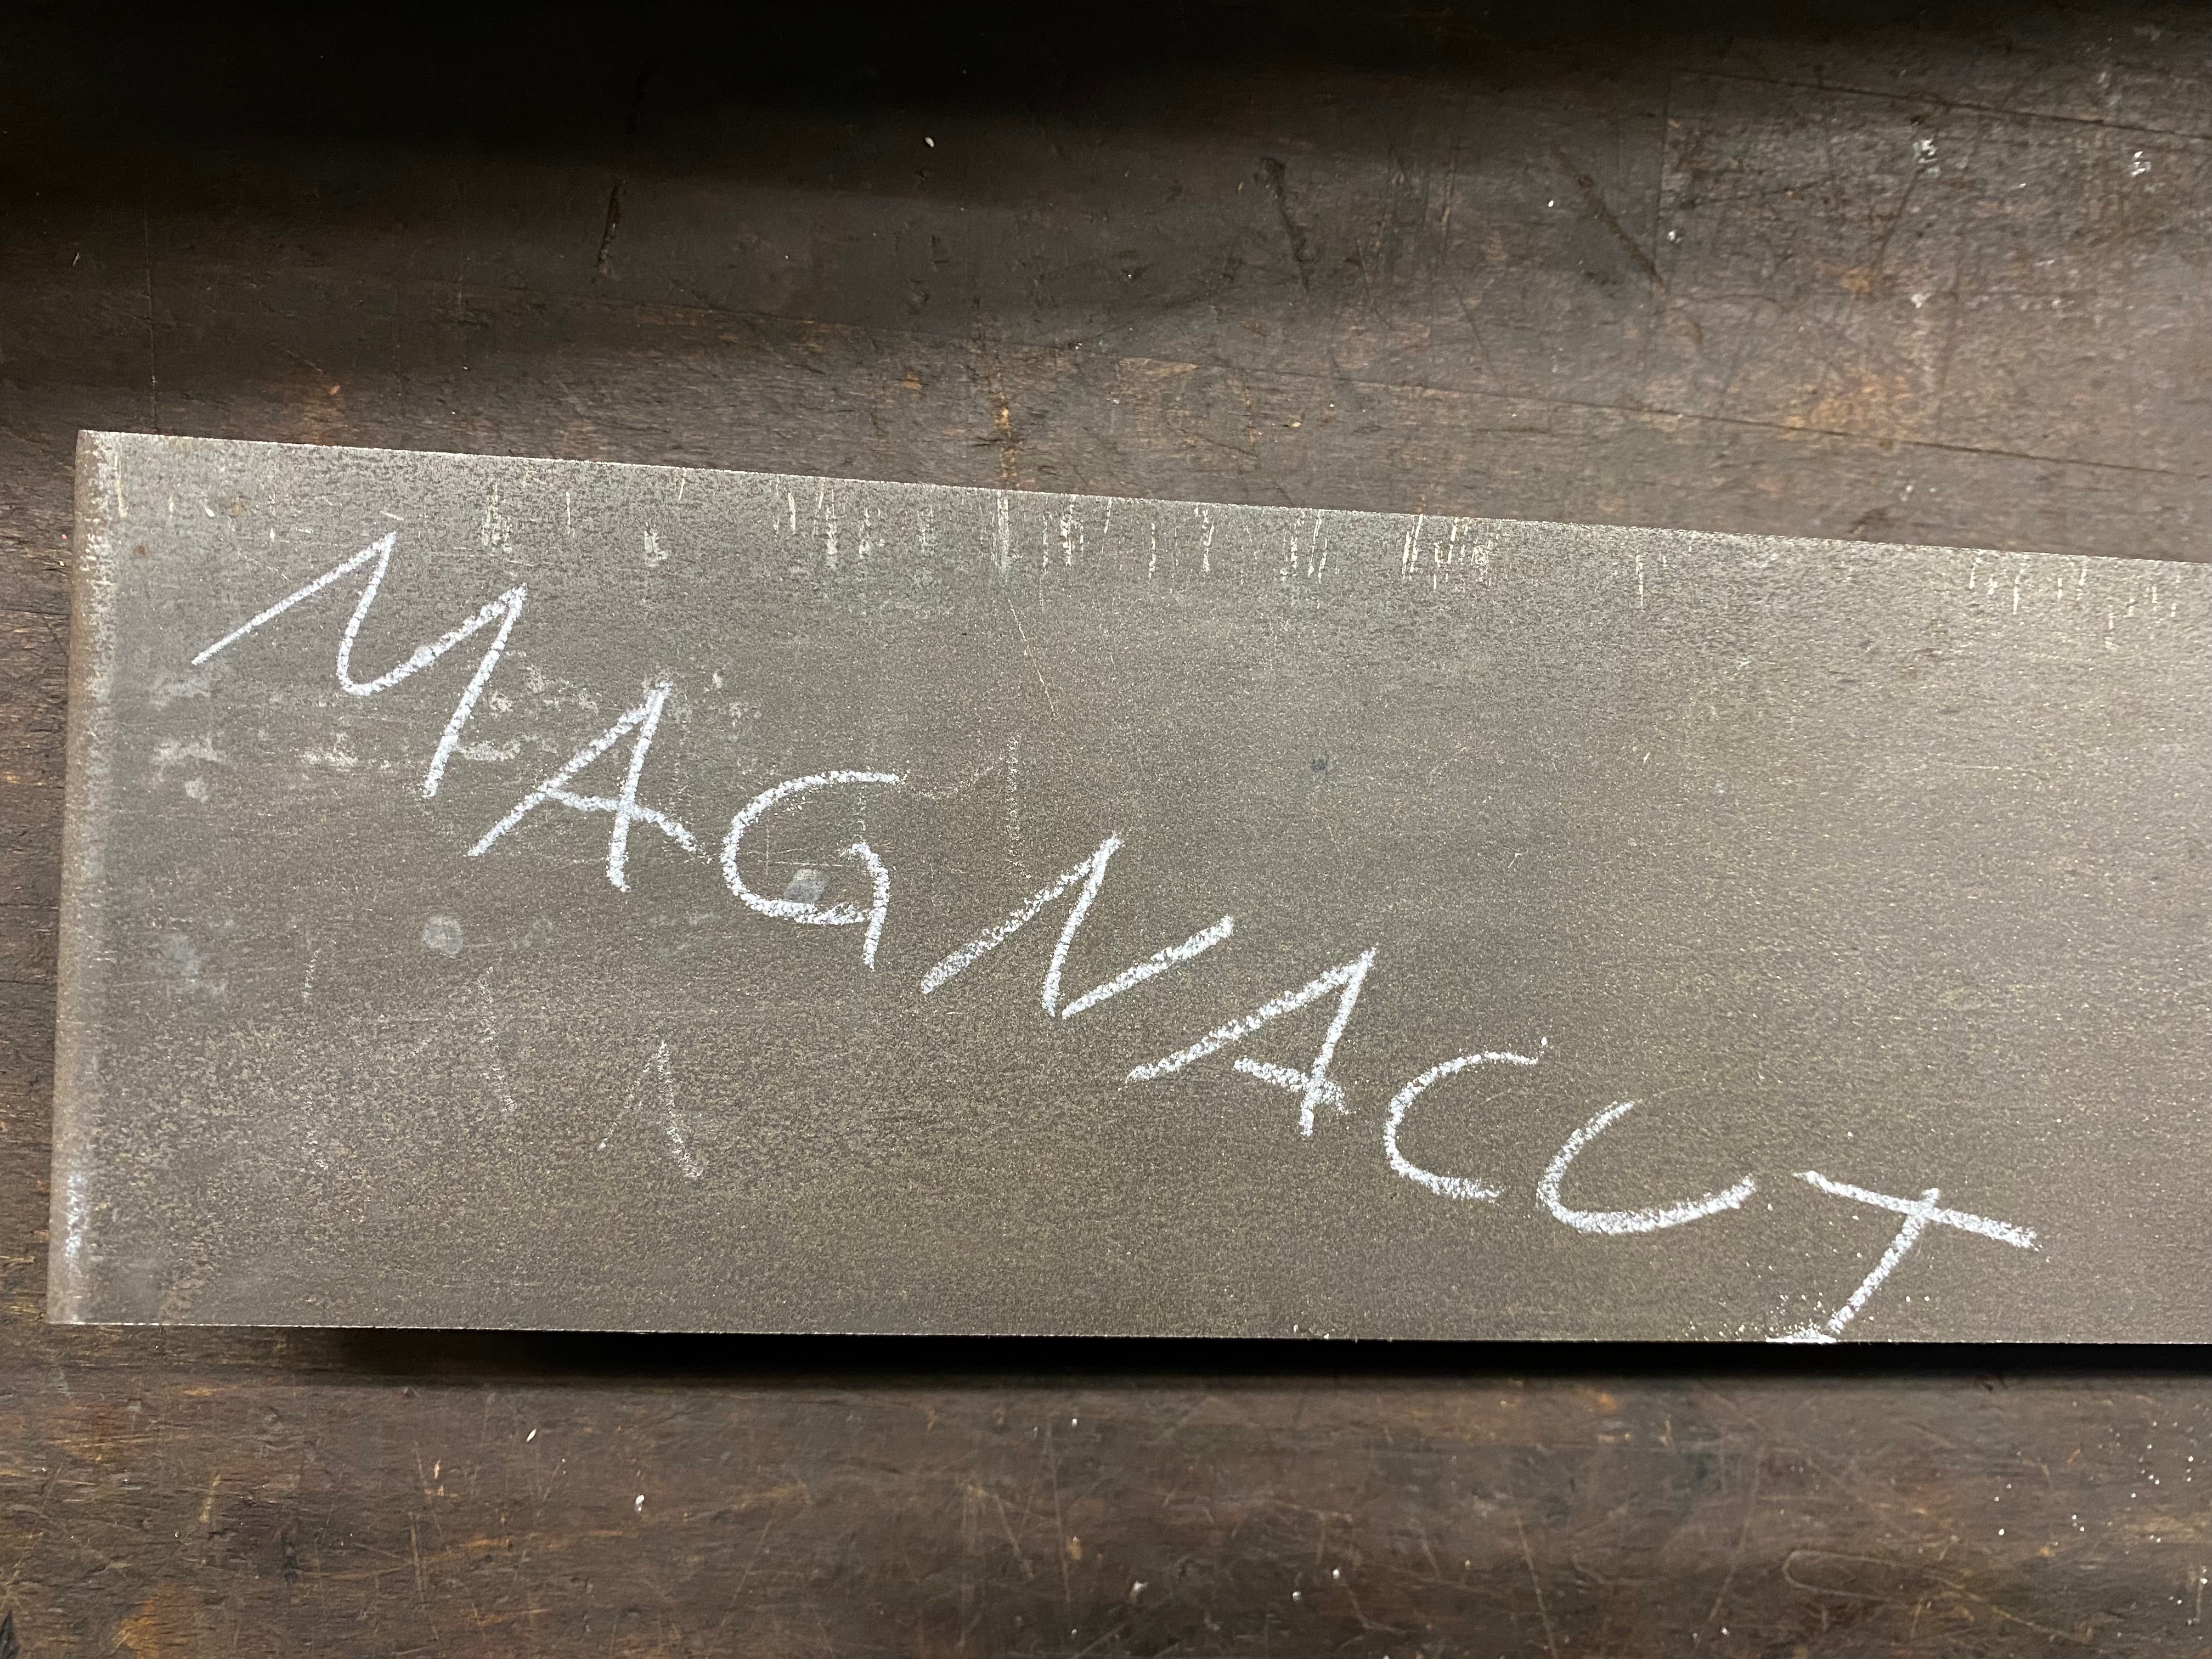 CPM MagnaCut